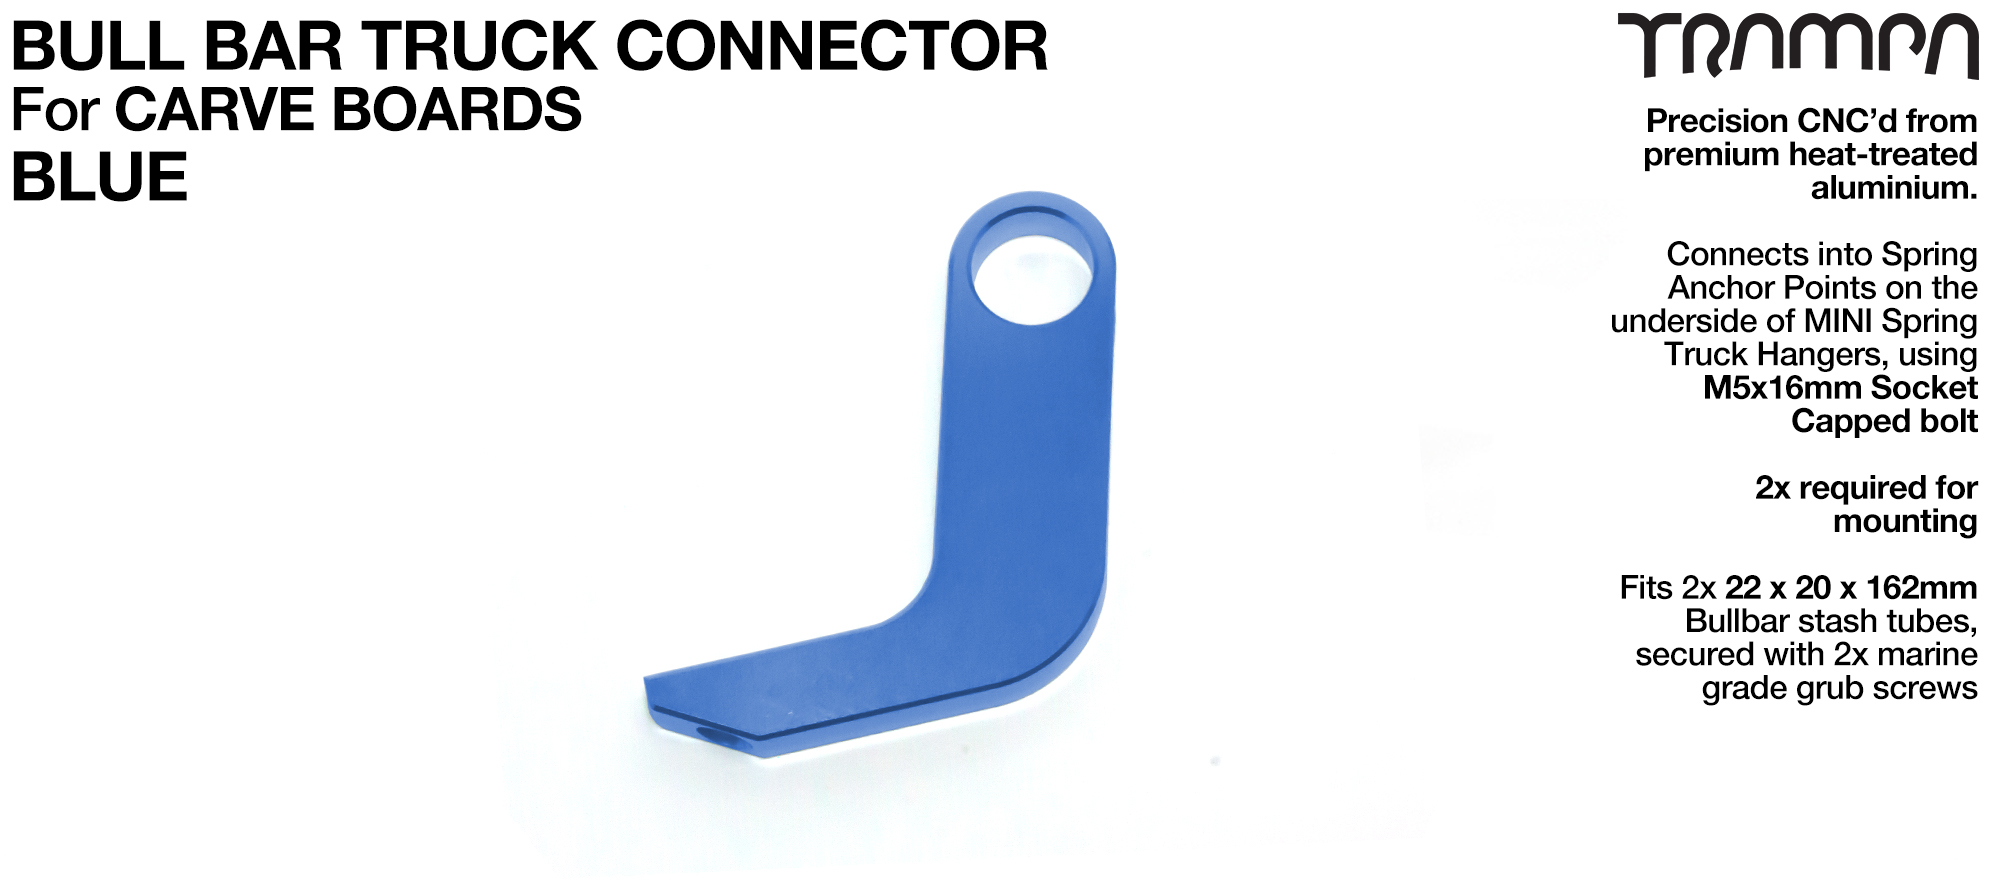 Carve Board Bull Bar connector - BLUE 